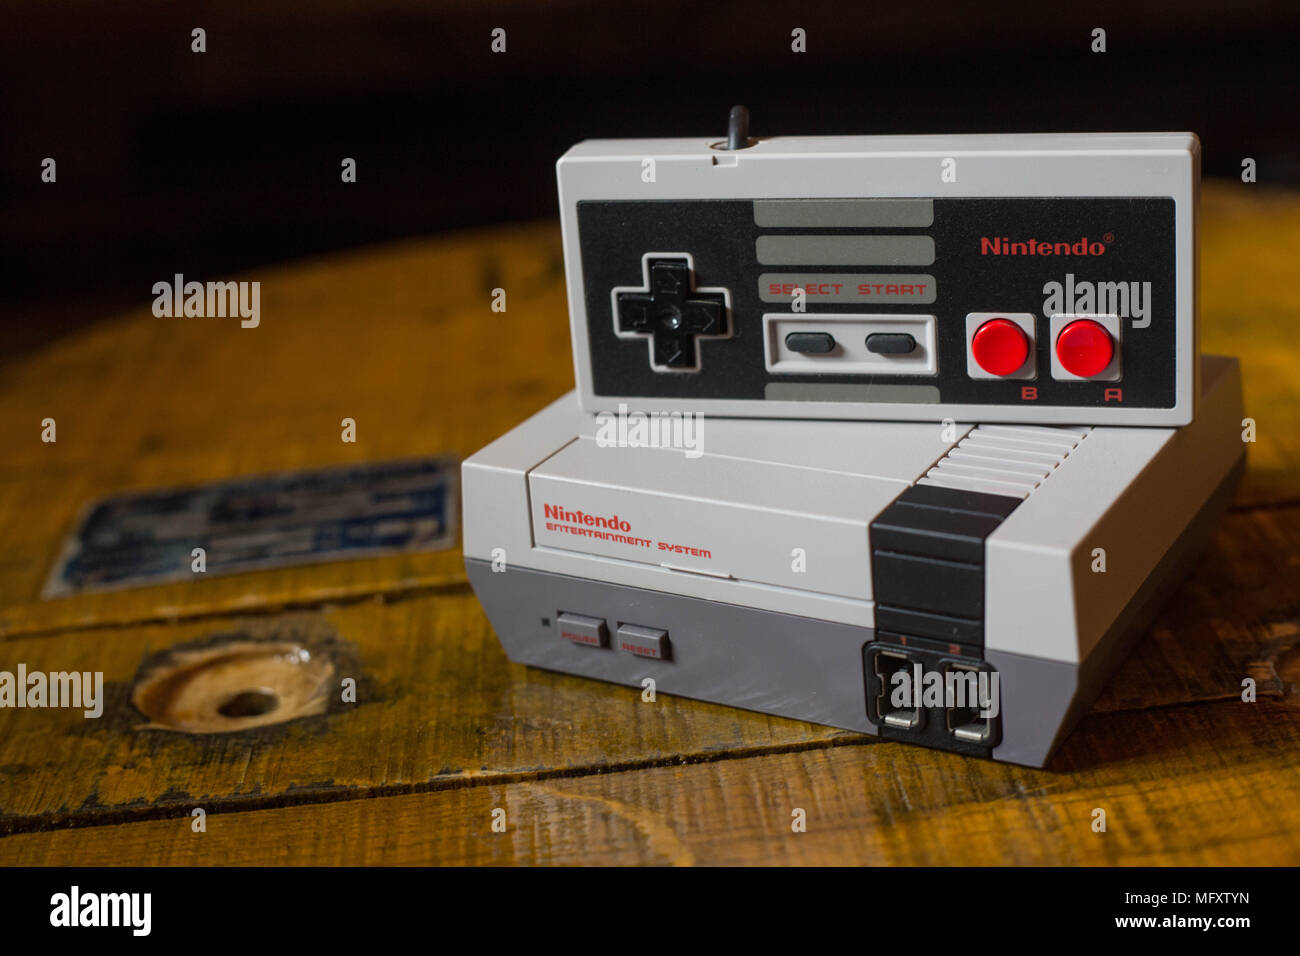 Ein Nintendo Classic Mini "Nintendo Entertainment System" video game  Konsole mit einem Controller. Das Kyoto-basierte Video Game Company Nintendo  endete es Comeback Jahr Umsatz mit im Wert von $ 9 Mrd. nach